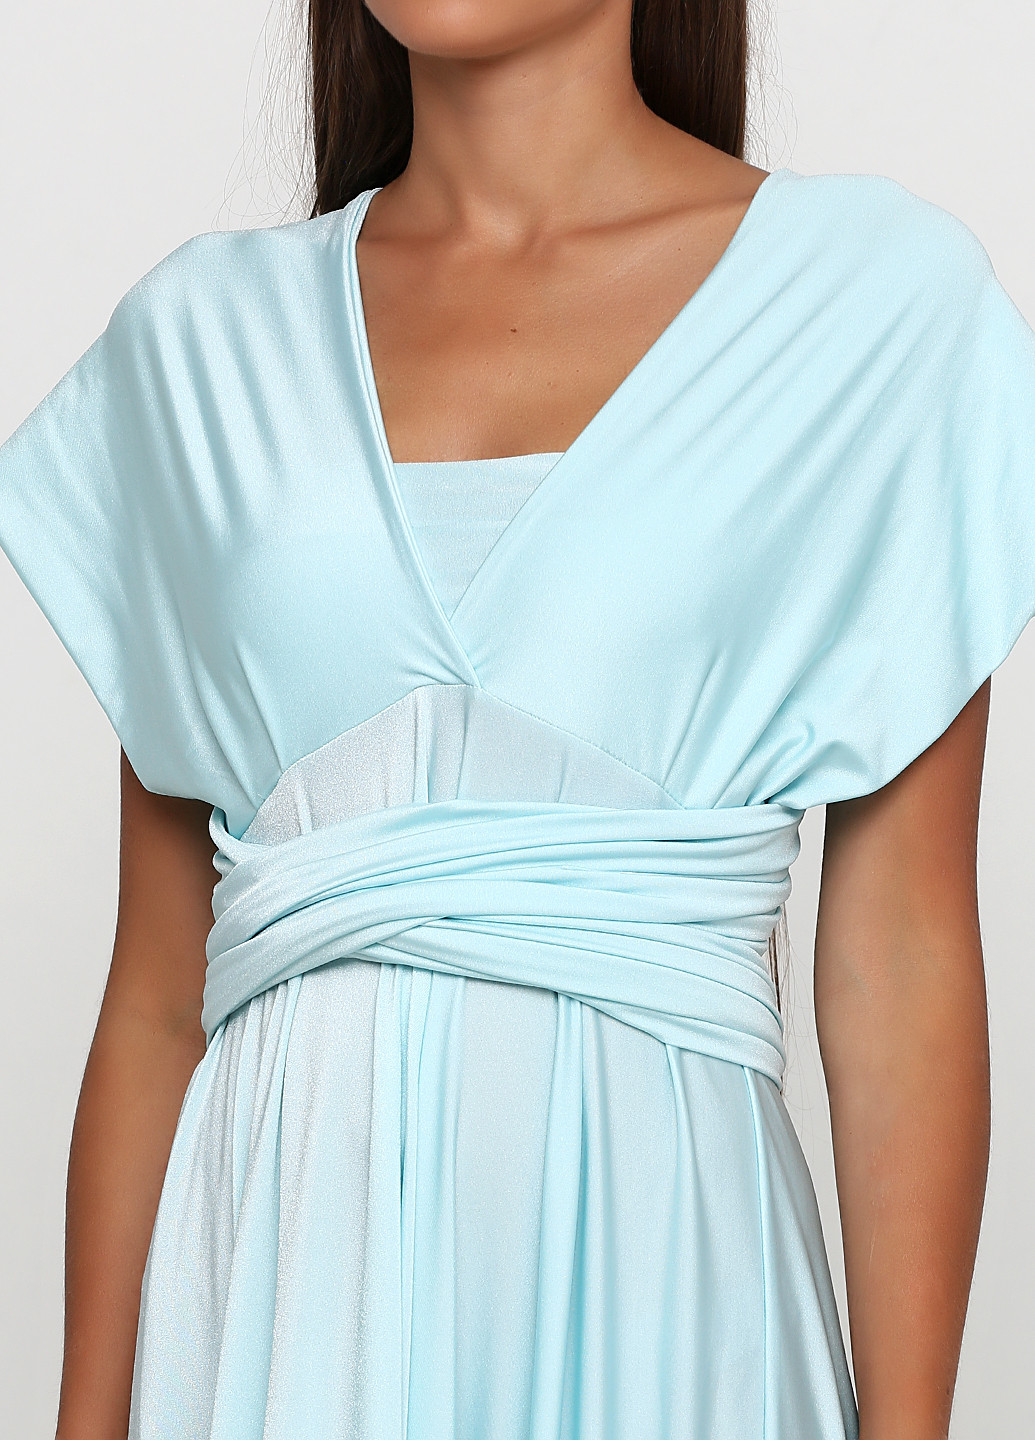 Бледно-голубое вечернее платье в стиле ампир Bliss by Liz однотонное